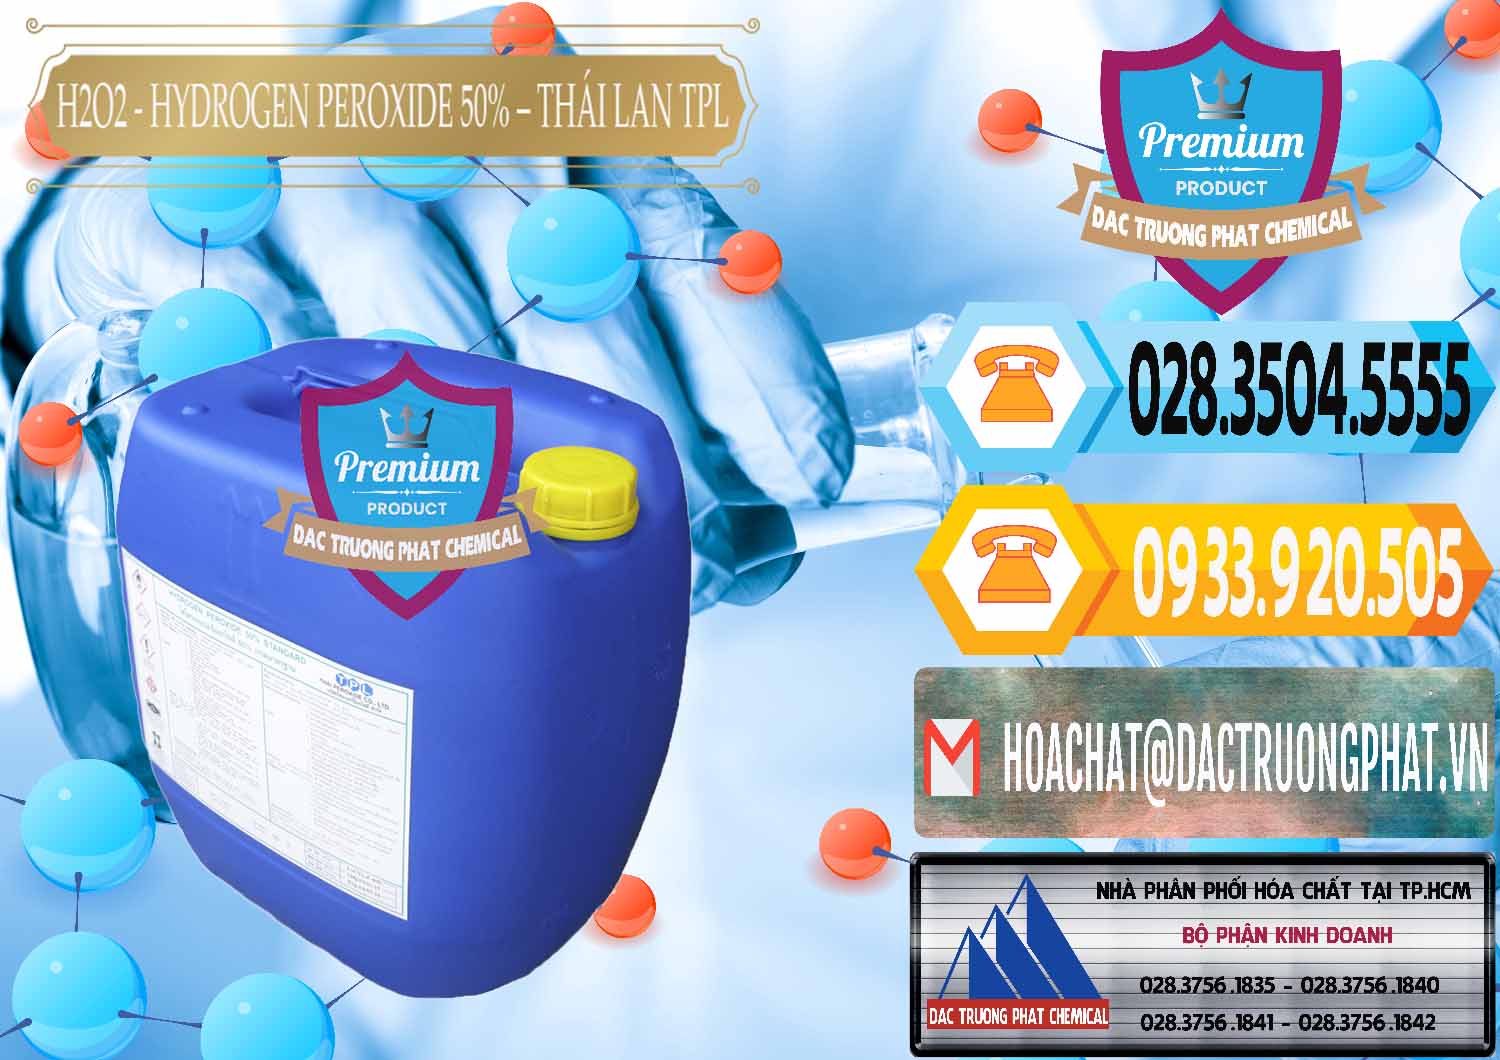 Nơi chuyên bán - phân phối H2O2 - Hydrogen Peroxide 50% Thái Lan TPL - 0076 - Cty phân phối - kinh doanh hóa chất tại TP.HCM - hoachattayrua.net